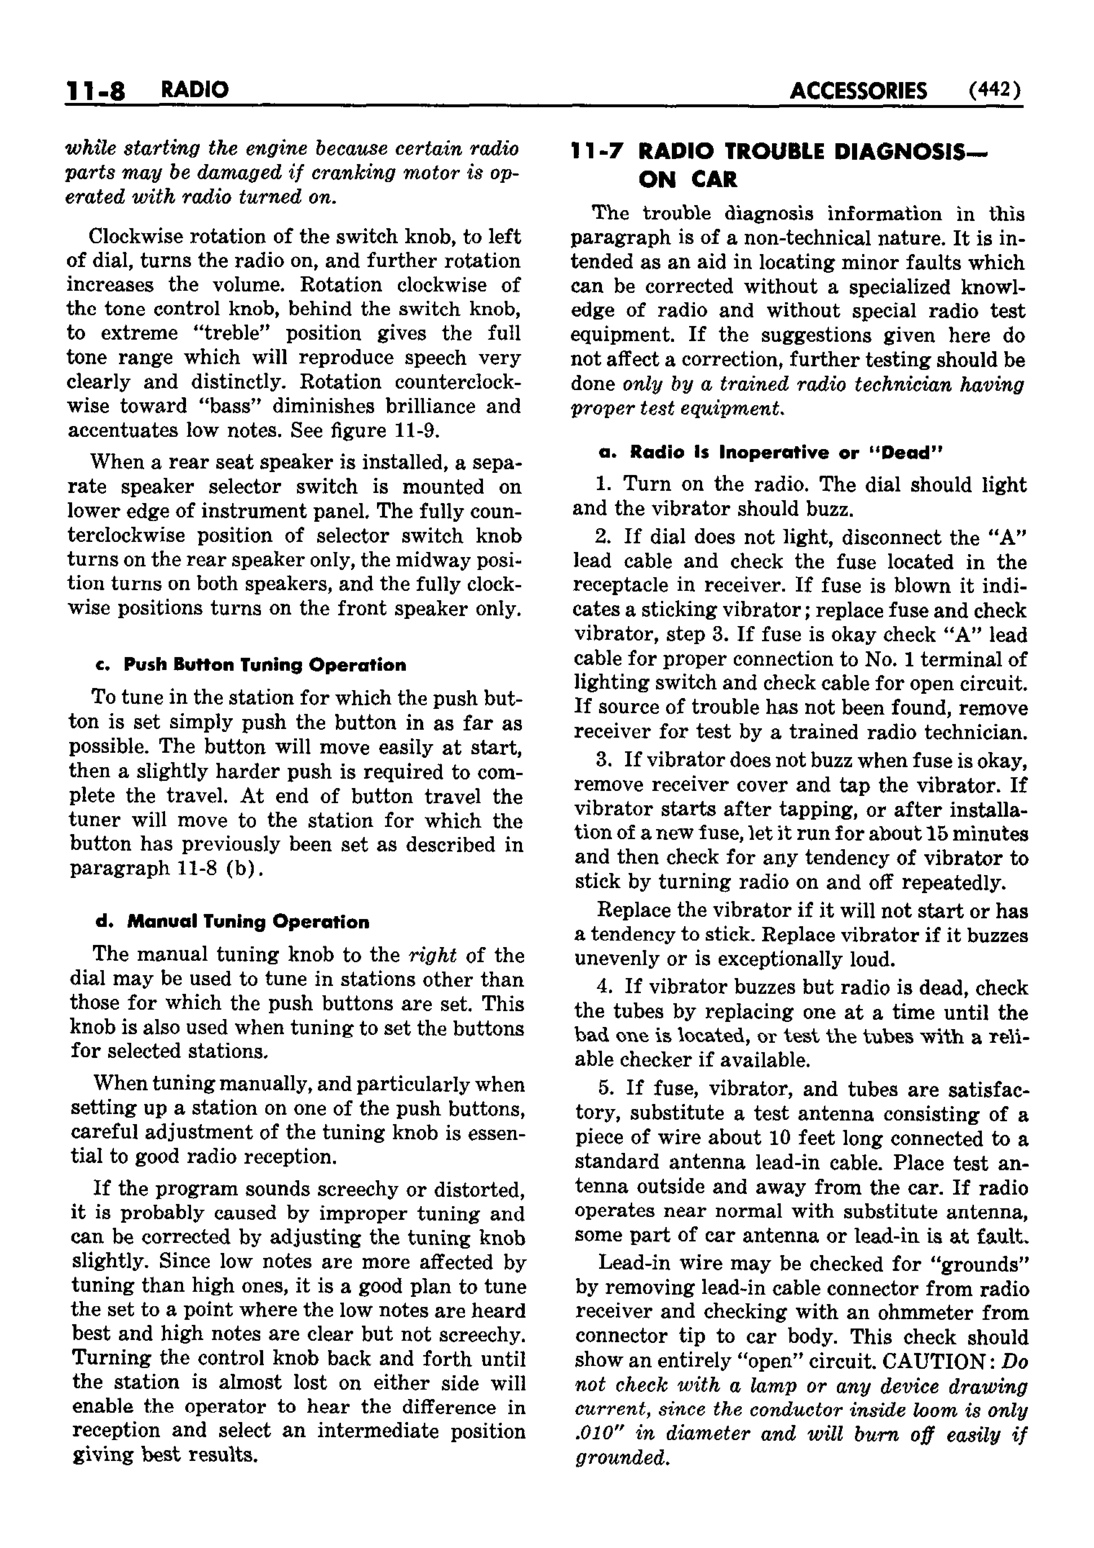 n_12 1952 Buick Shop Manual - Accessories-008-008.jpg